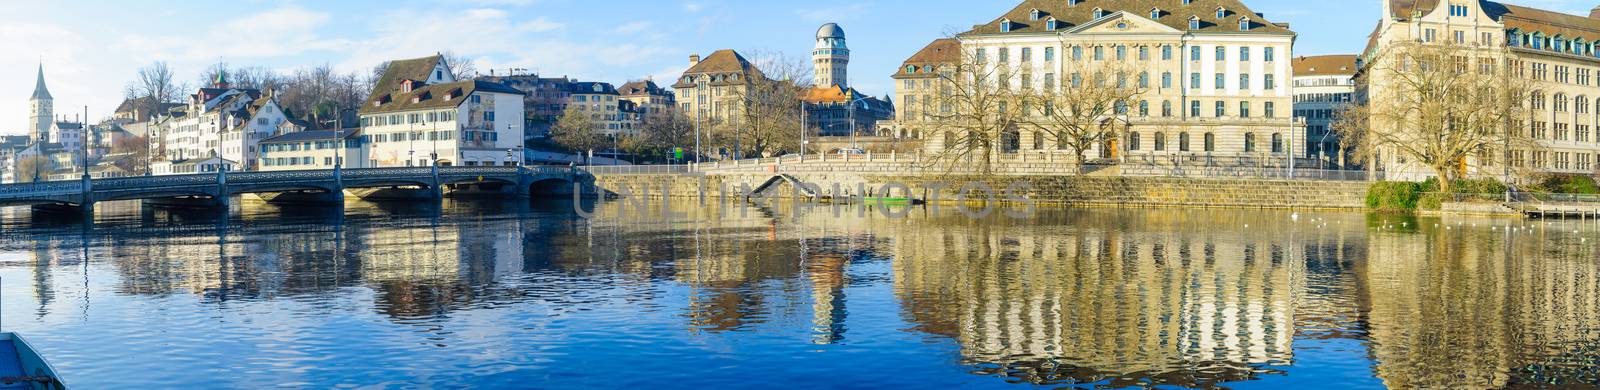 Zurich Old Town (Altstadt) by RnDmS